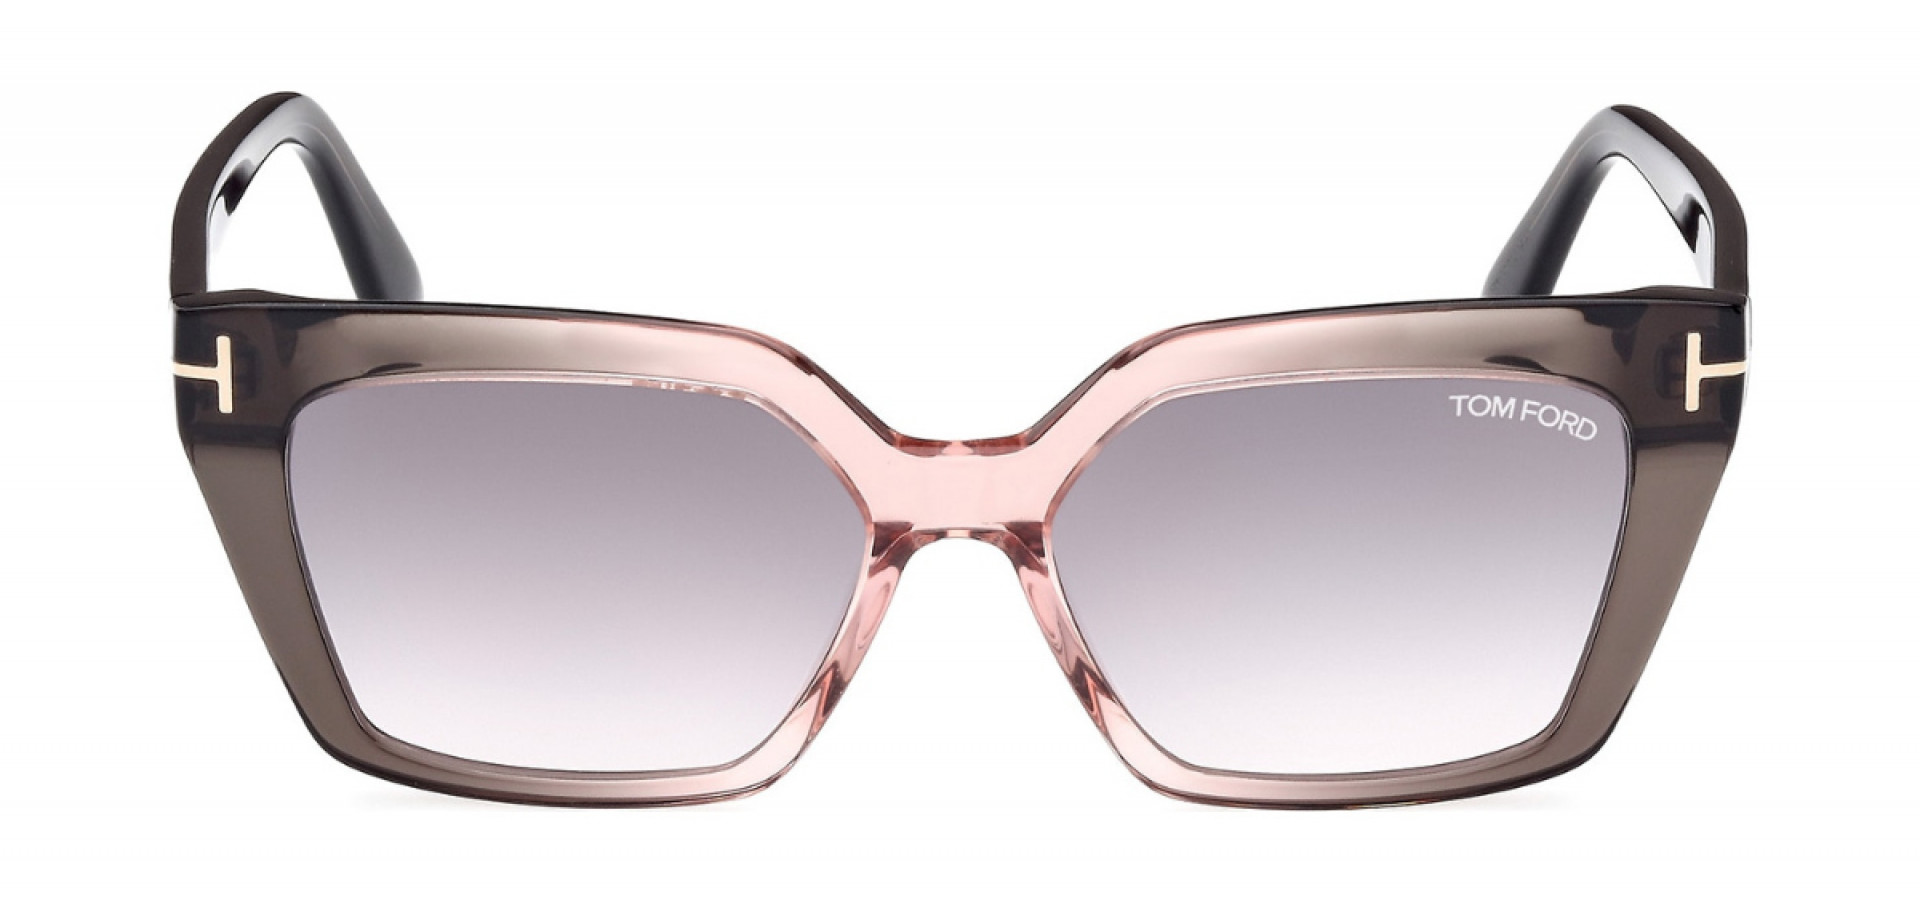 Sunčane naočale Tom Ford FT1030 53 20G: Boja: Transparent Gray/Rose, Veličina: 53-15-140, Spol: ženske, Materijal: acetat